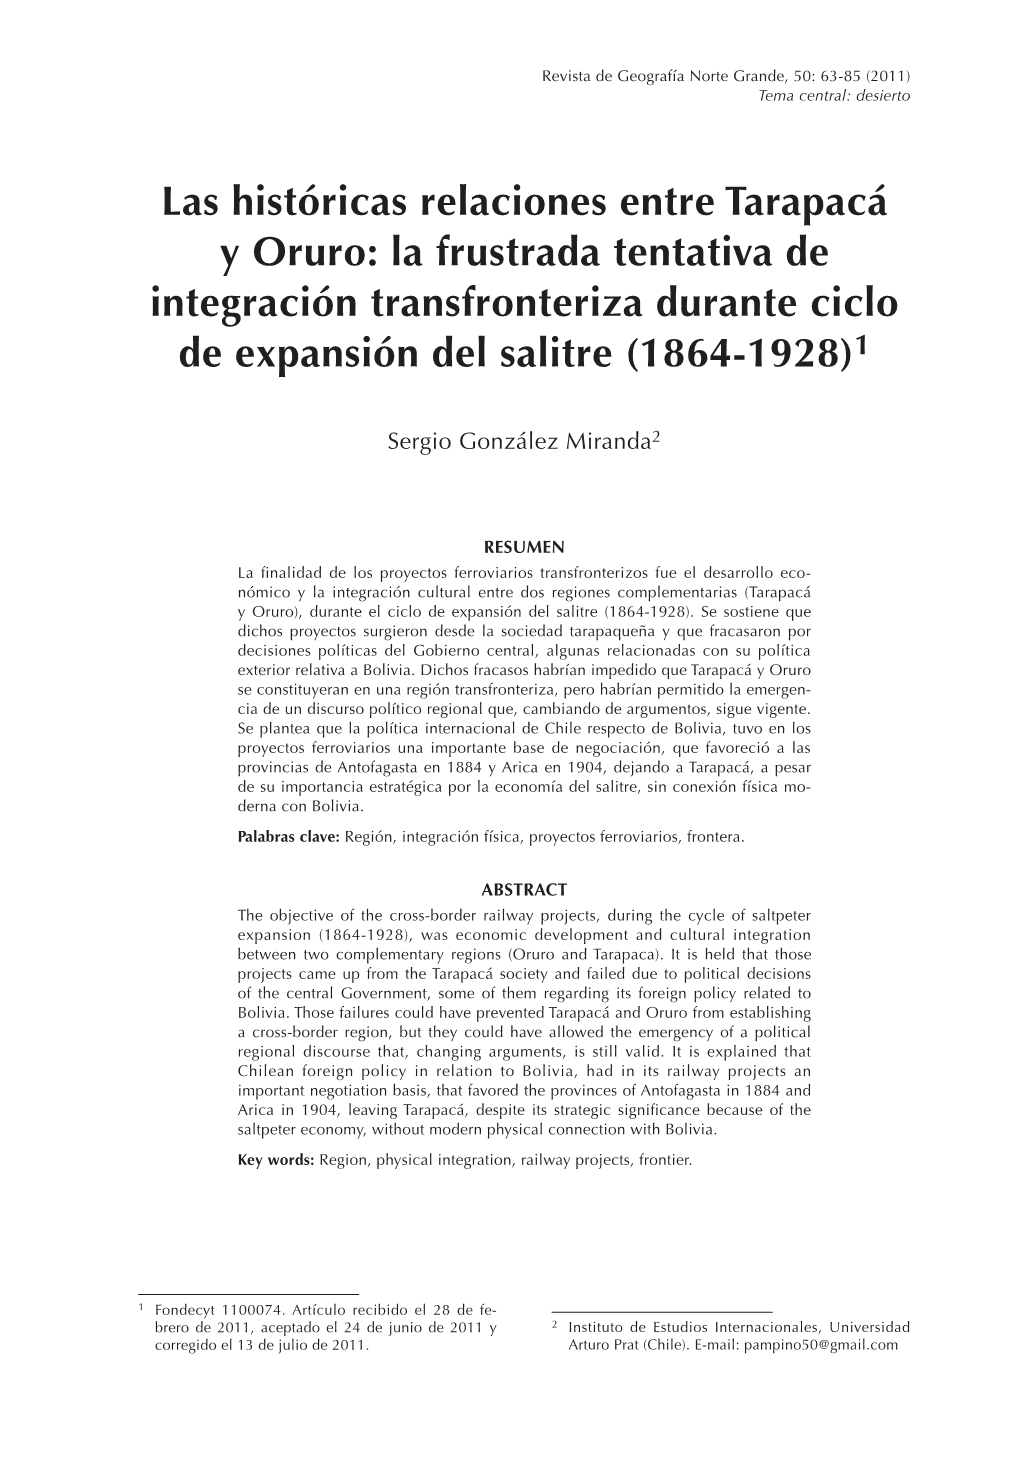 Las Históricas Relaciones Entre Tarapacá Y Oruro: La Frustrada Tentativa De Integración Transfronteriza Durante Ciclo De Expansión Del Salitre (1864-1928)1